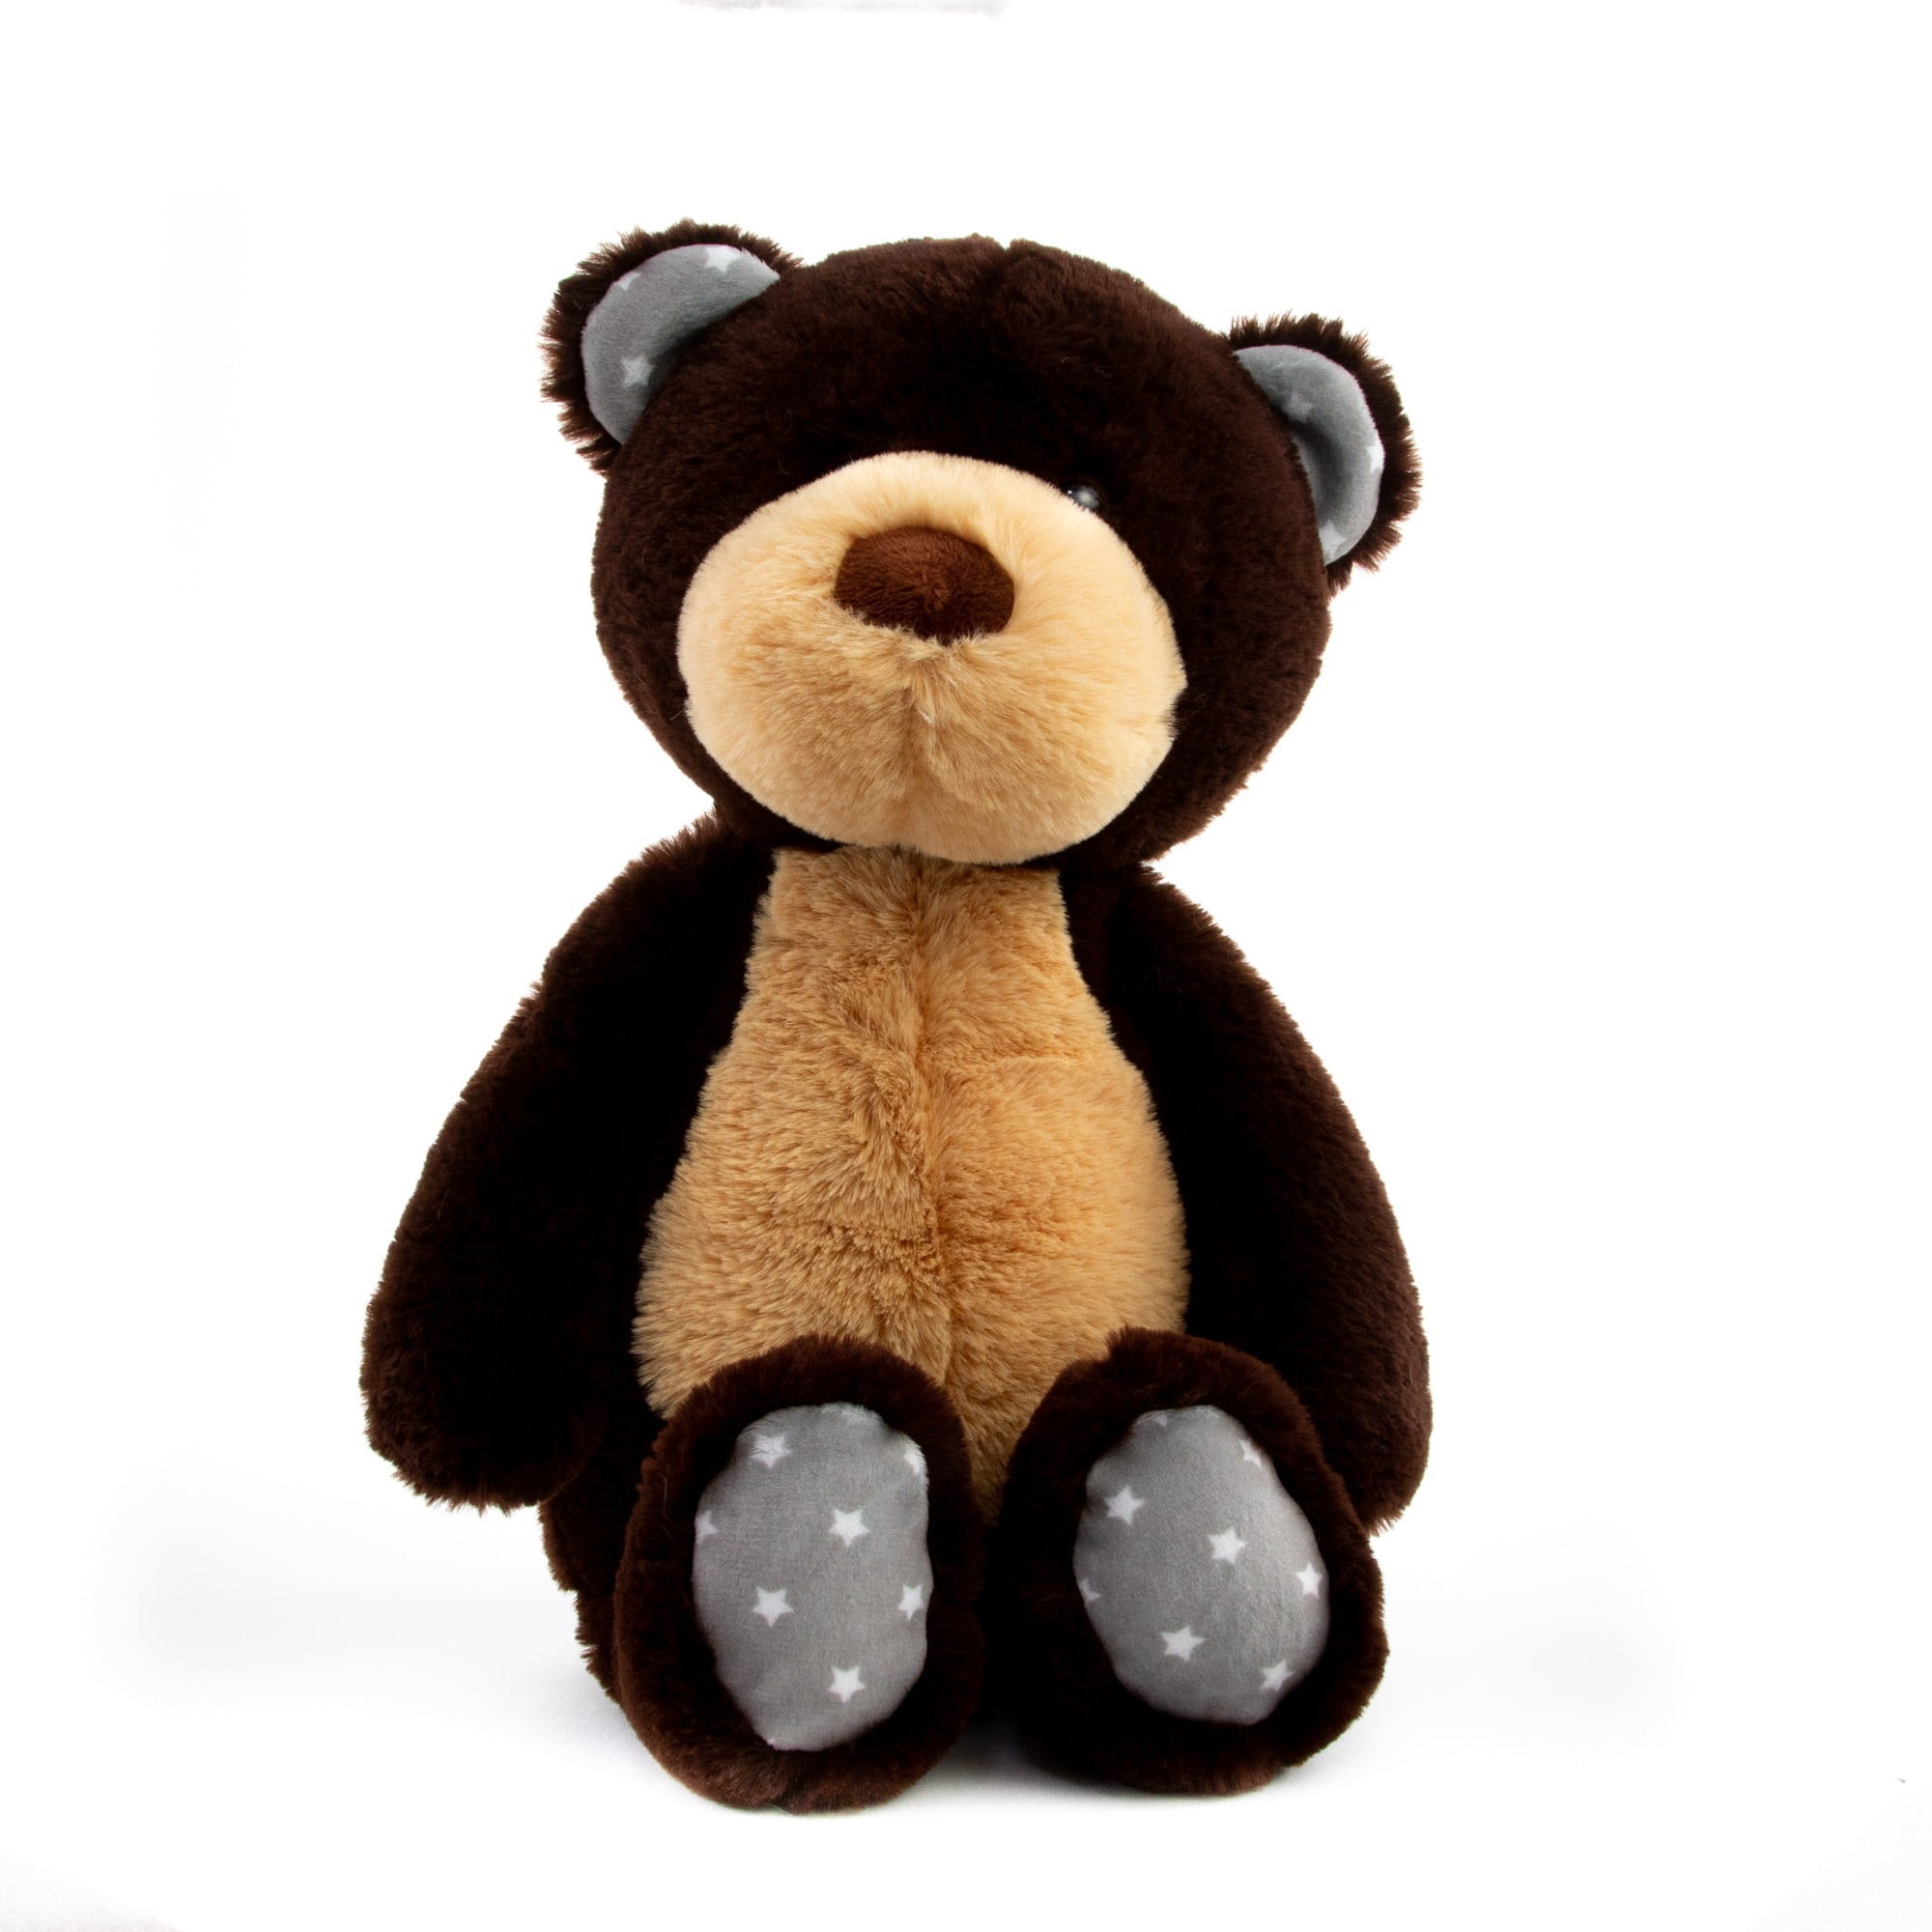 Prextex 12-Inch Get Well Soon Plush Bear - Soft Stuffed Teddy Bear